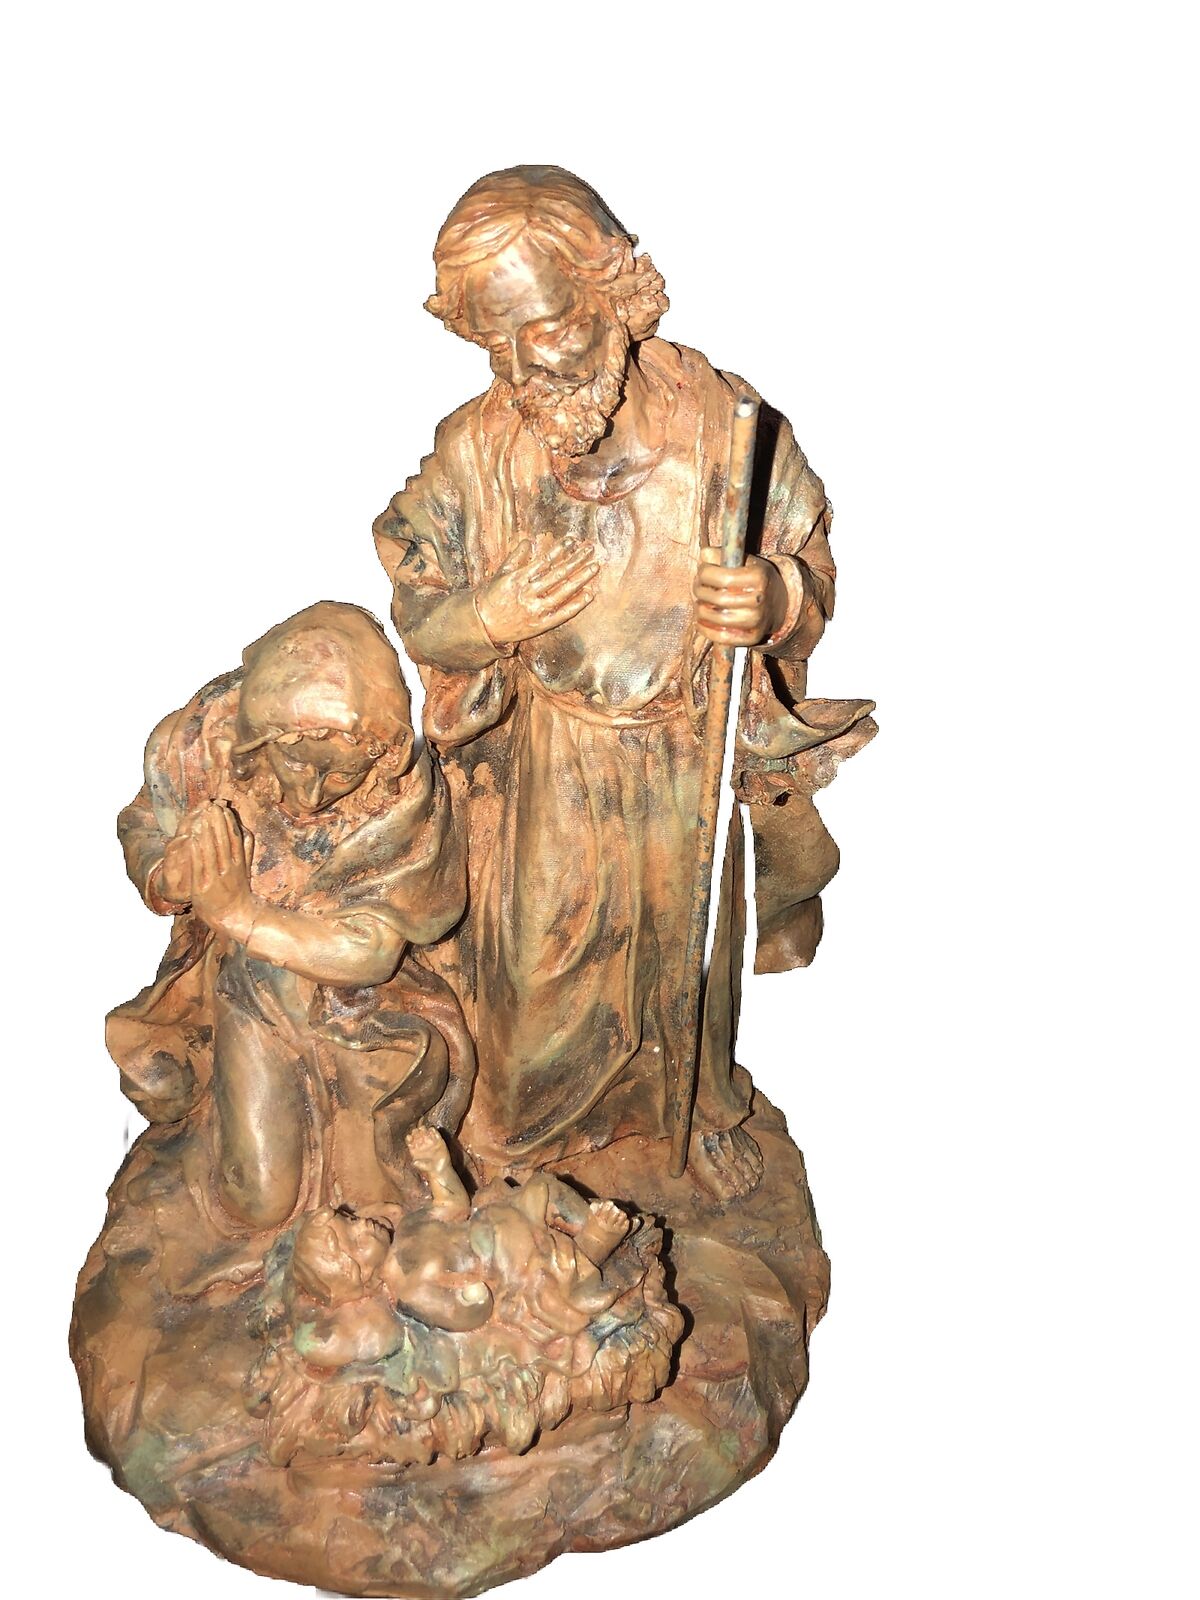 Vintage Religious Christian Mother Mary Joseph Jesus Figurine Ceramic